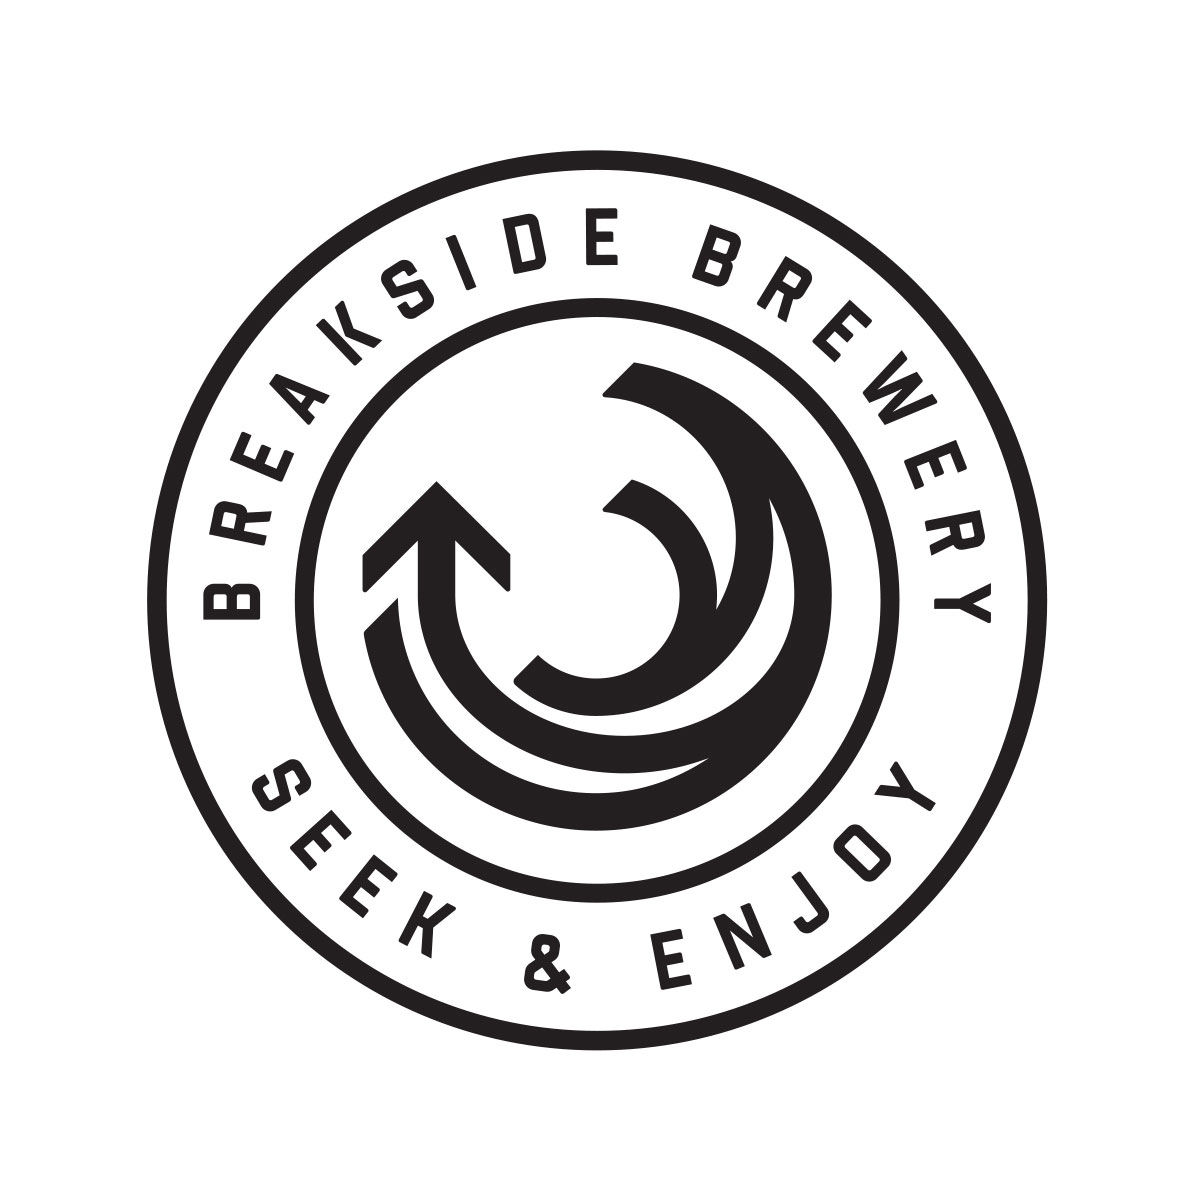 New-Breakside-Brewery-logo.jpg